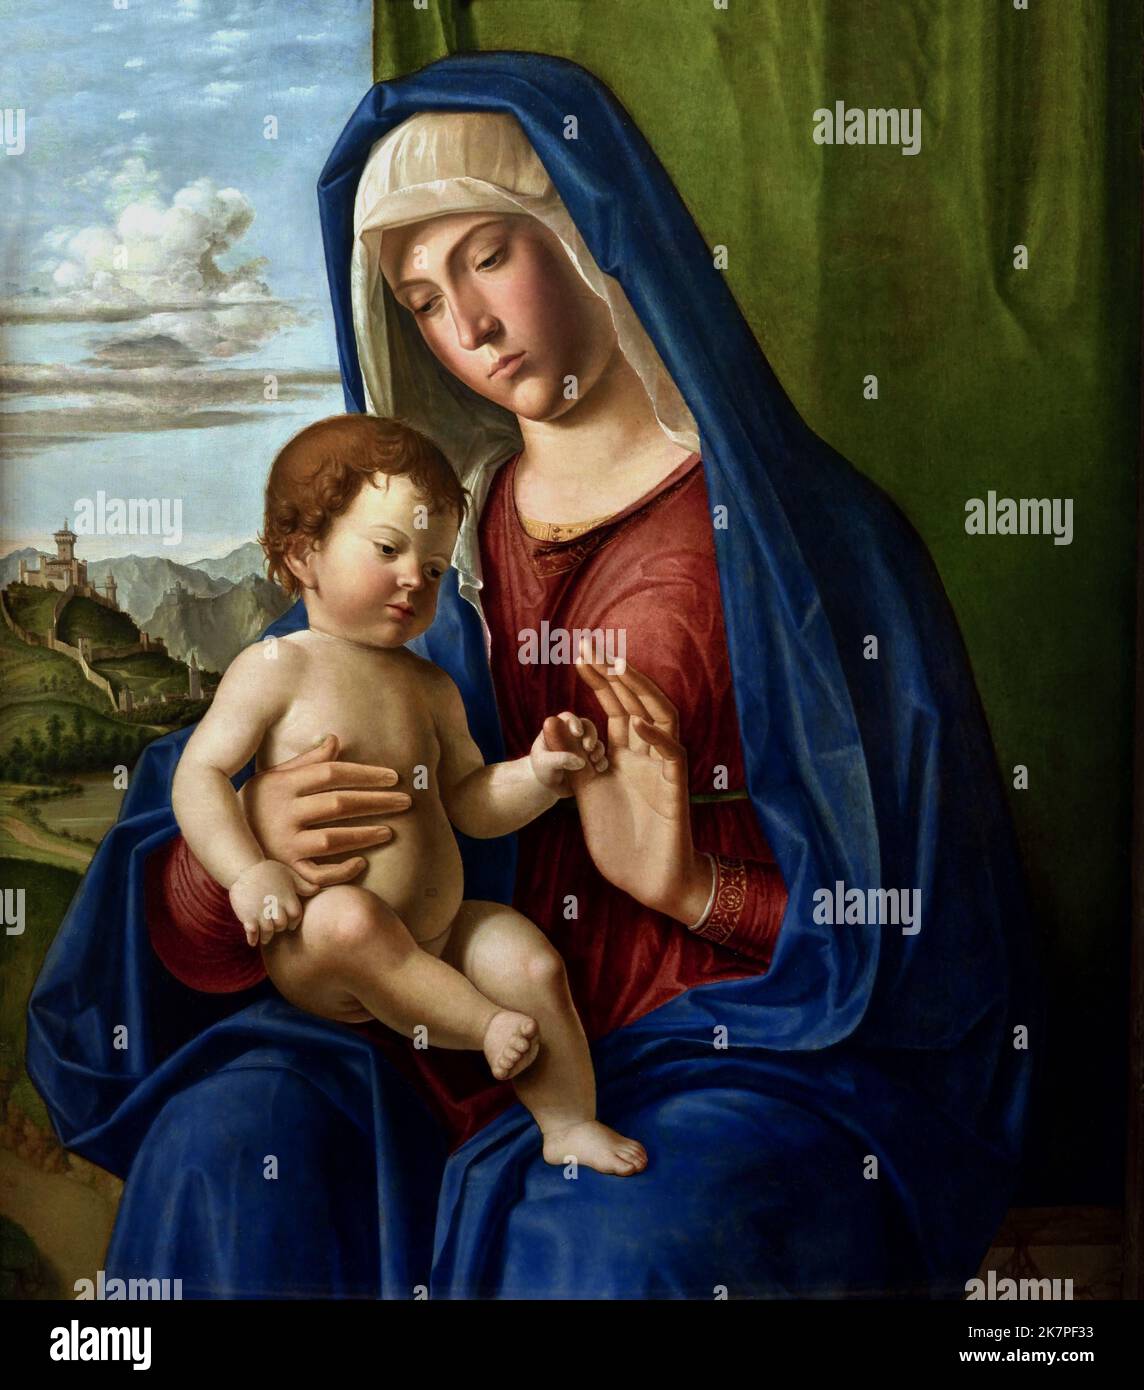 Madonna and Child 1504 Giovanni Battista Cima, also called Cima da Conegliano 1459 – 1517 was an Italian Renaissance painter, Stock Photo